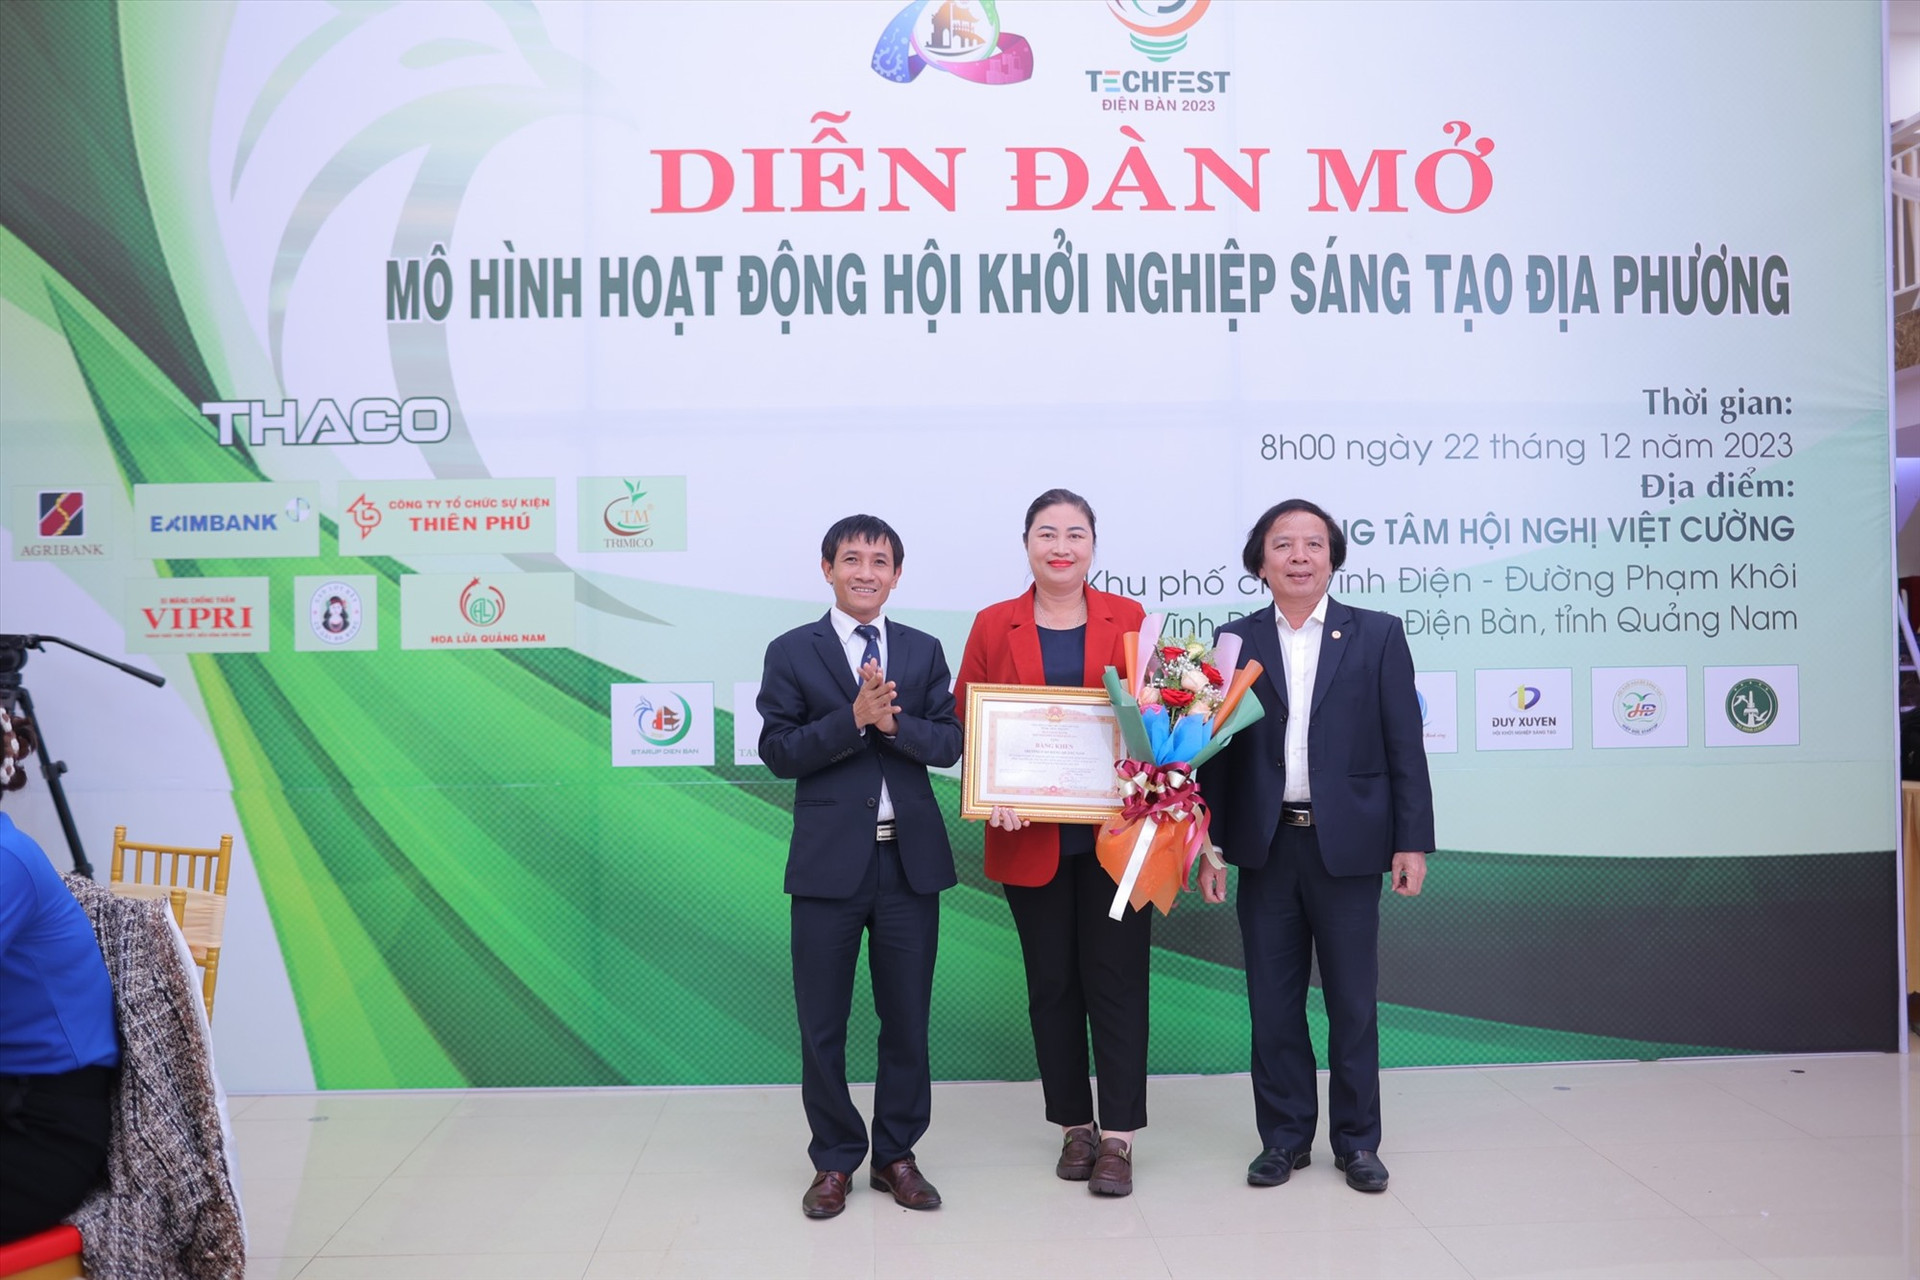 Cá nhân bà Vũ Thị Phương Anh nhận Bằng khen của Hiệp hội khởi nghiệp Quốc gia.